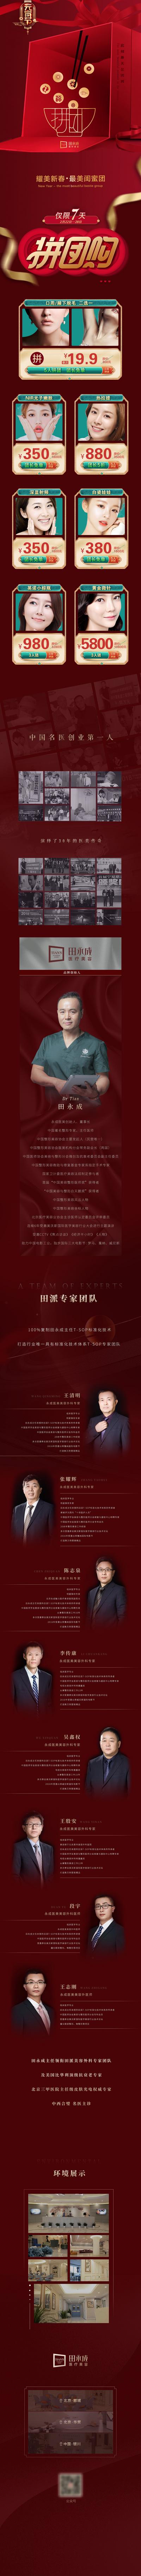 南门网 专题设计 长图 医美 美容 中国传统节日 元宵节 拼团 礼盒 促销 专家 活动 红色